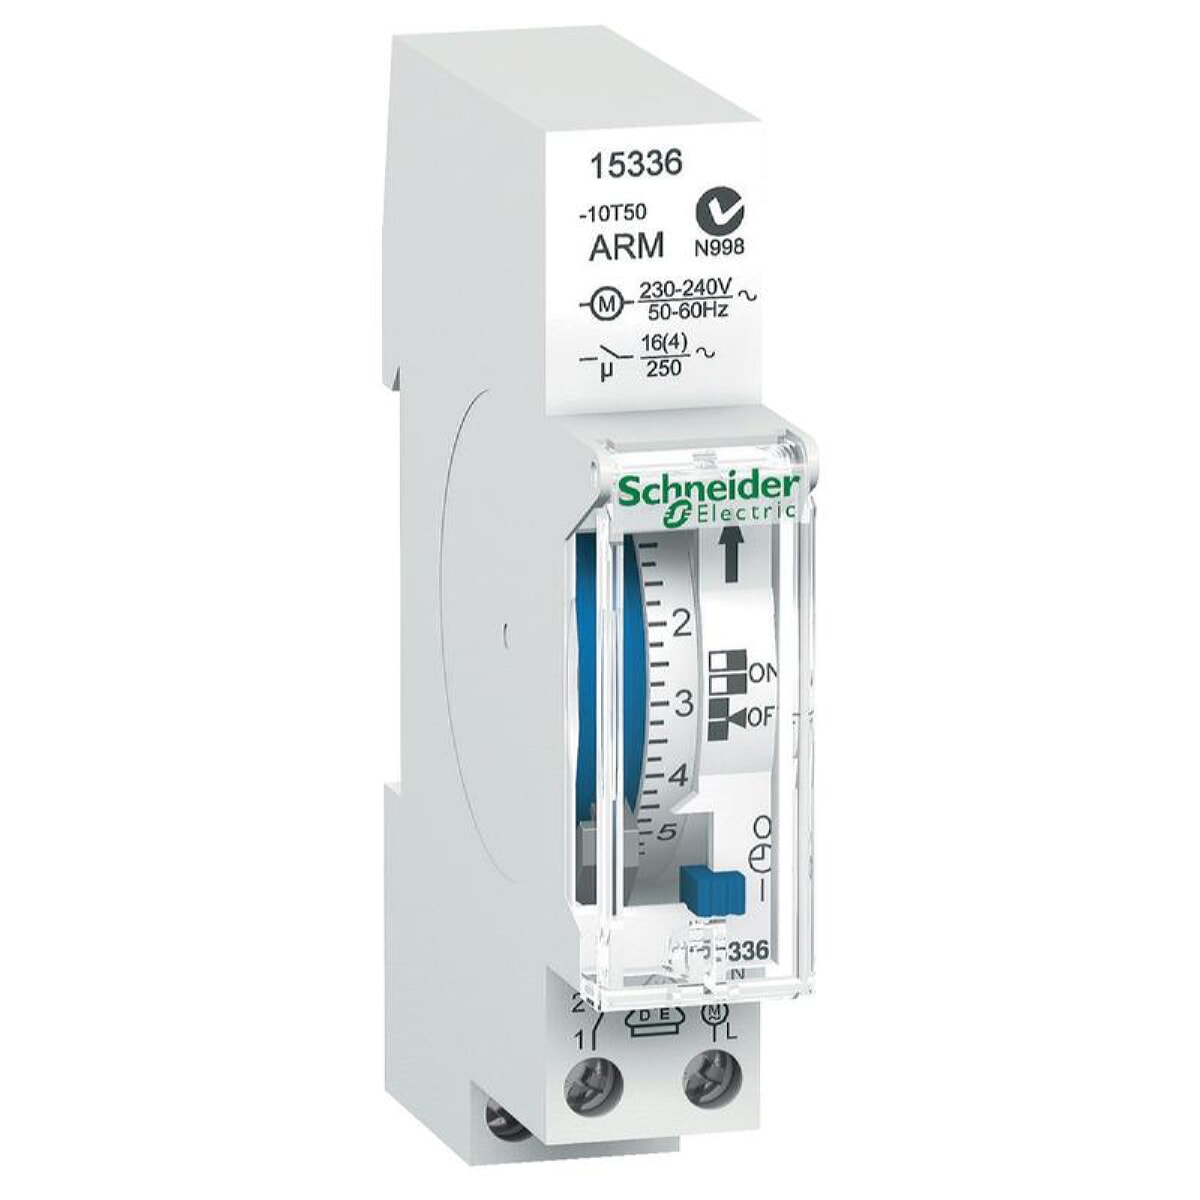 Schneider Electric Zeitschaltuhr IH 24h 1c ARM 1TE 15336